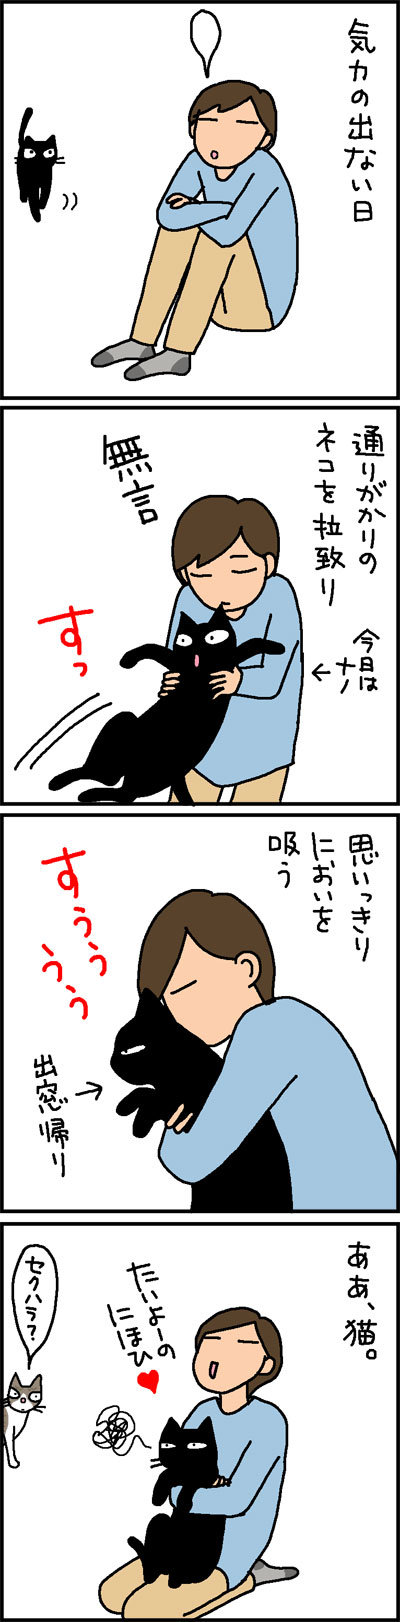 猫のにおいを嗅いで嫌される4コマ猫漫画